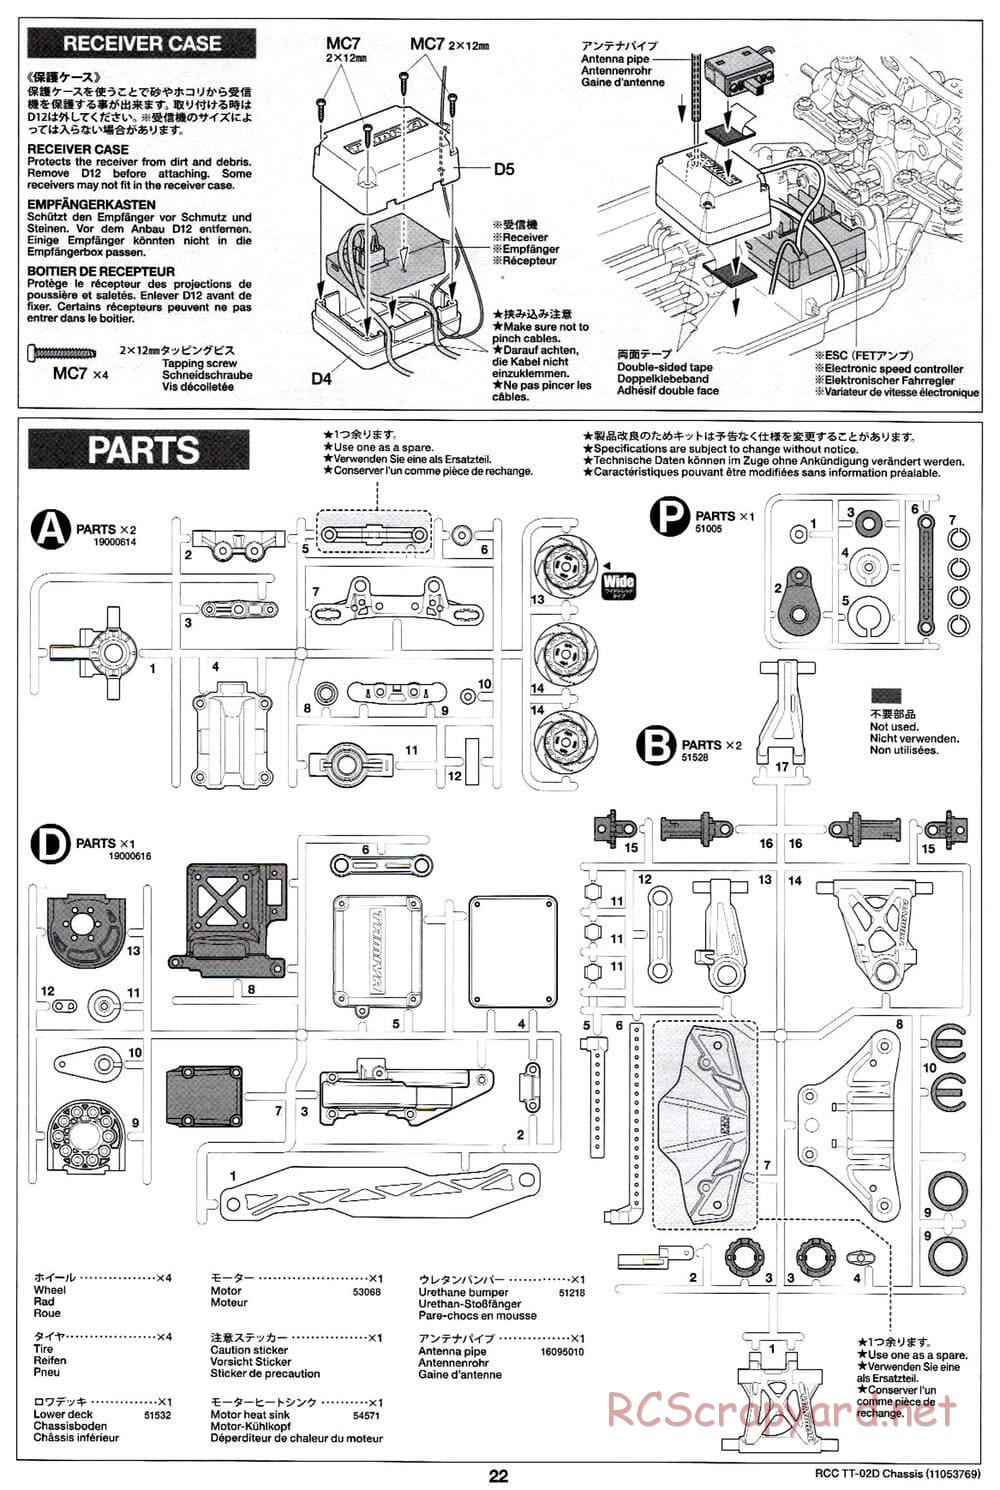 Tamiya - TT-02D Chassis - Manual - Page 22